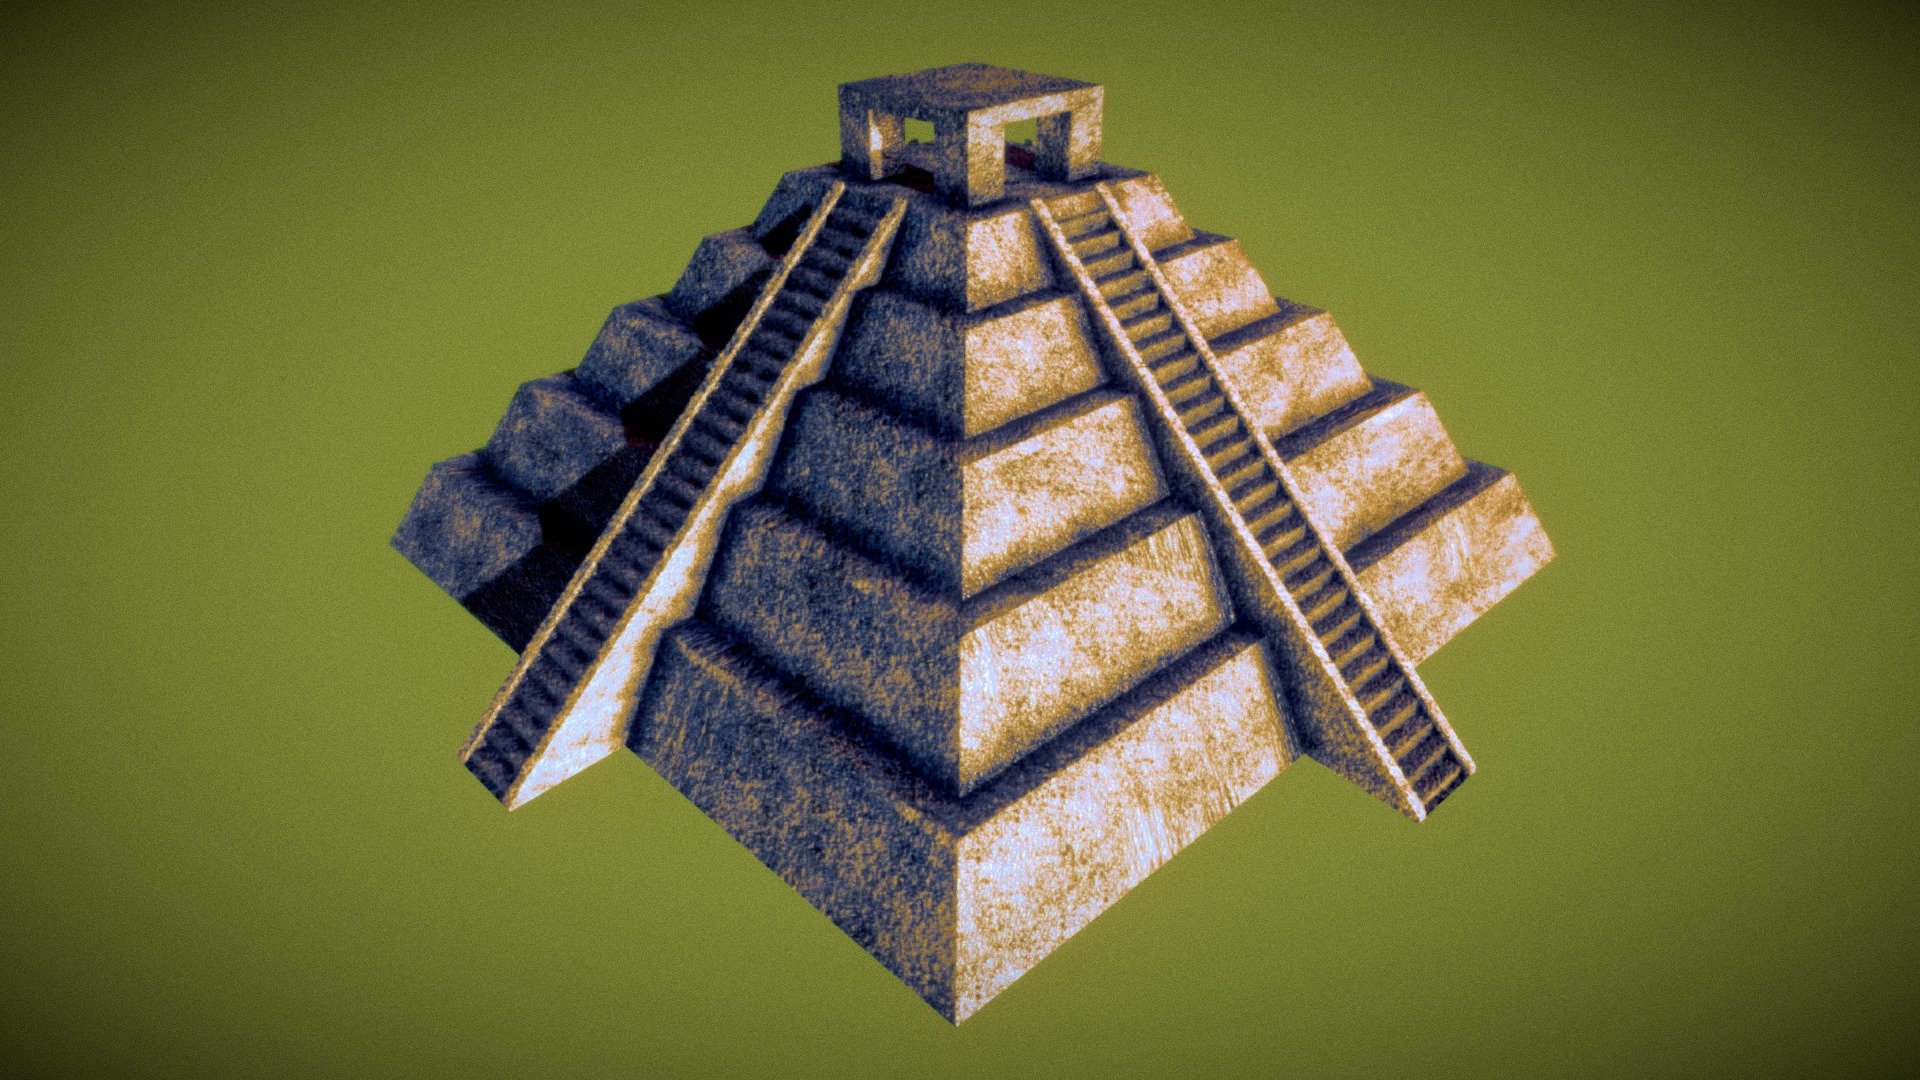 3d Pyramid Model